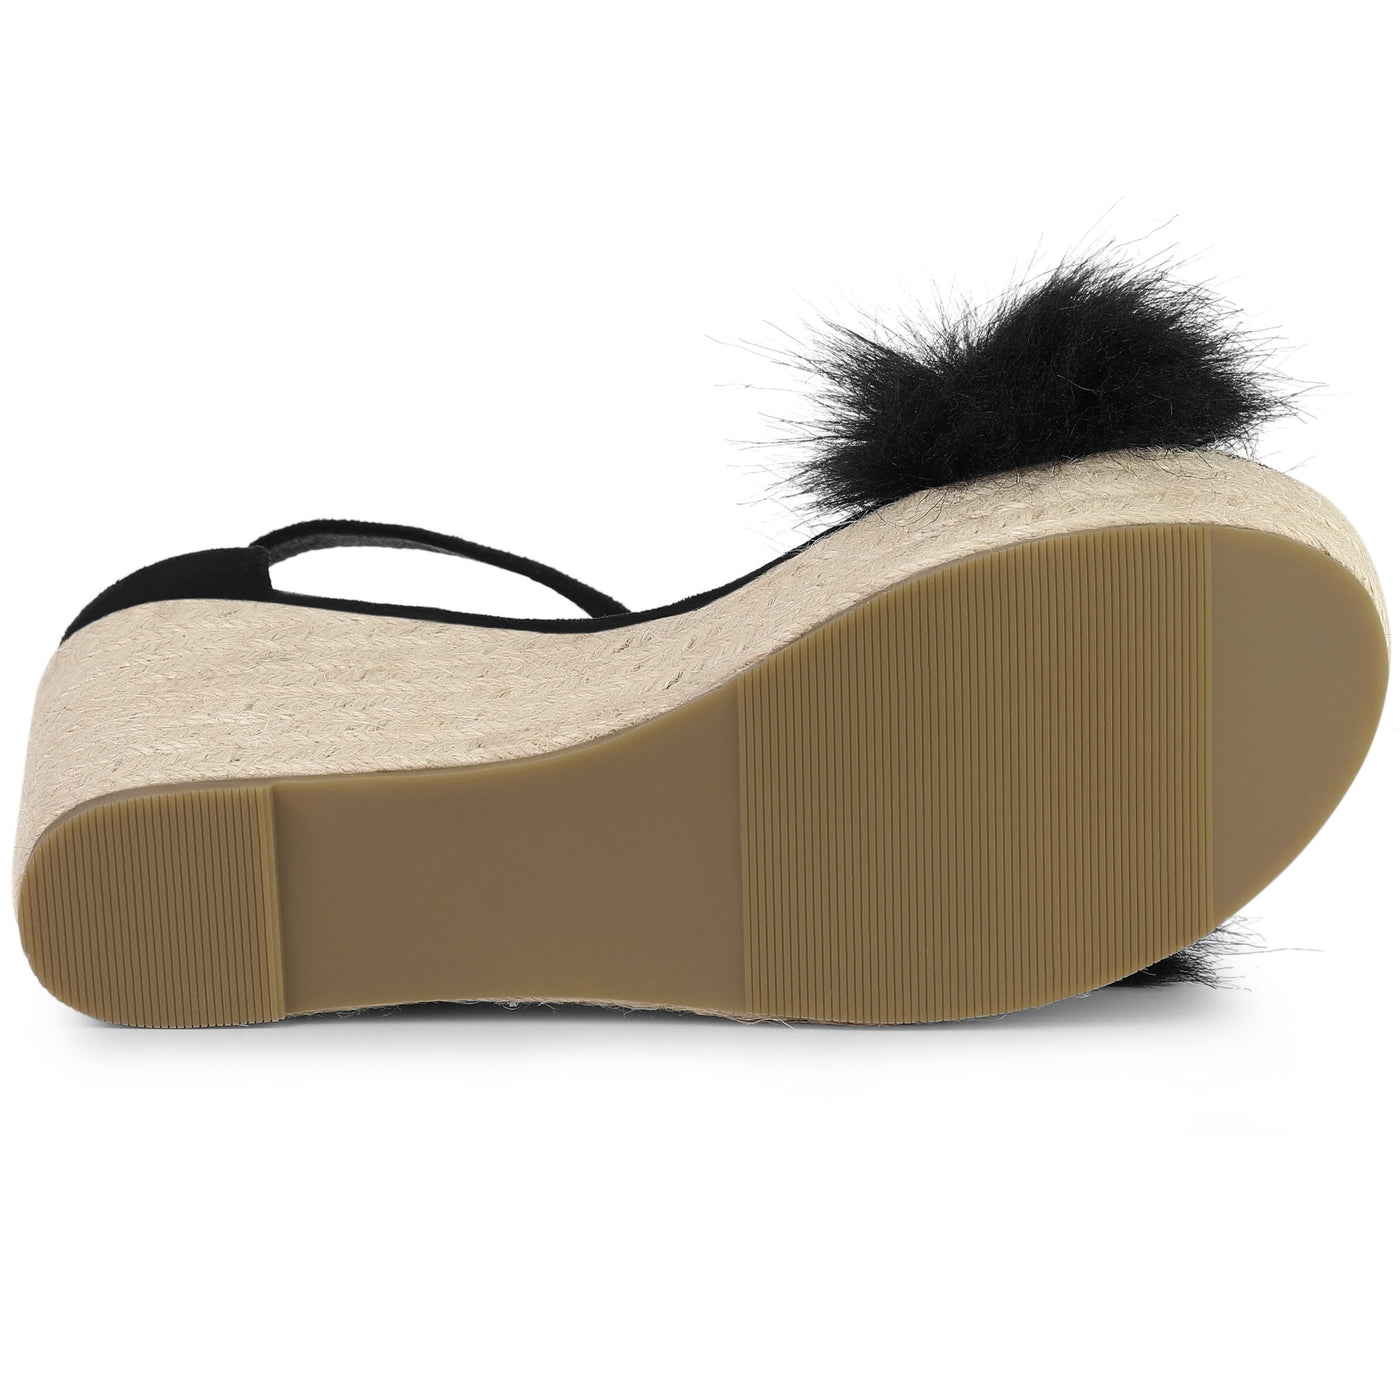 Allegra K Open Toe Espadrille Platform Heel Faux Fur Wedge Sandals